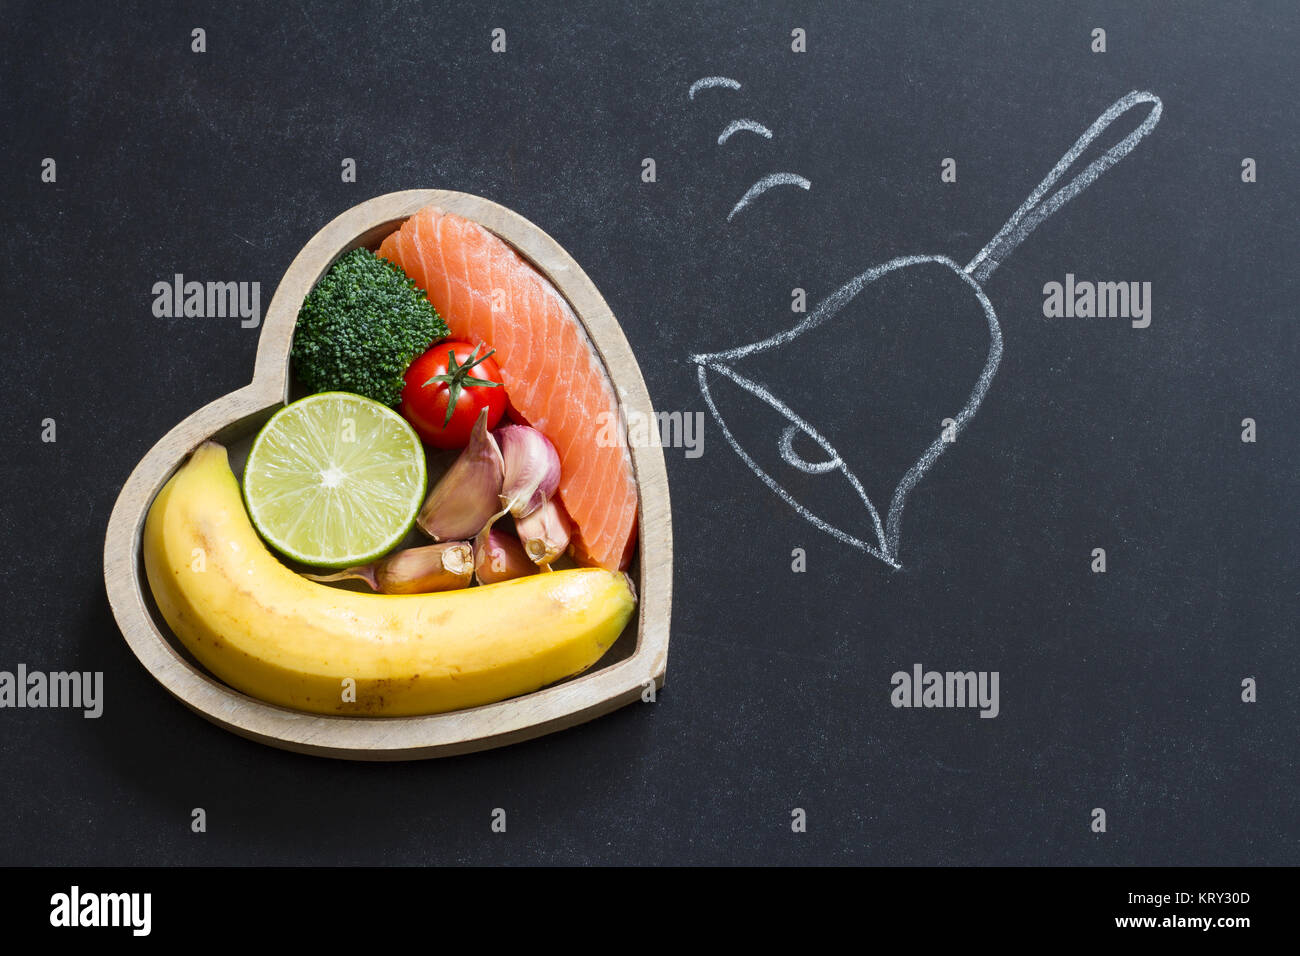 Zeit für Gesundheit Herz abstrakte Ernährung Food Konzept auf der Tafel mit Glocke Stockfoto